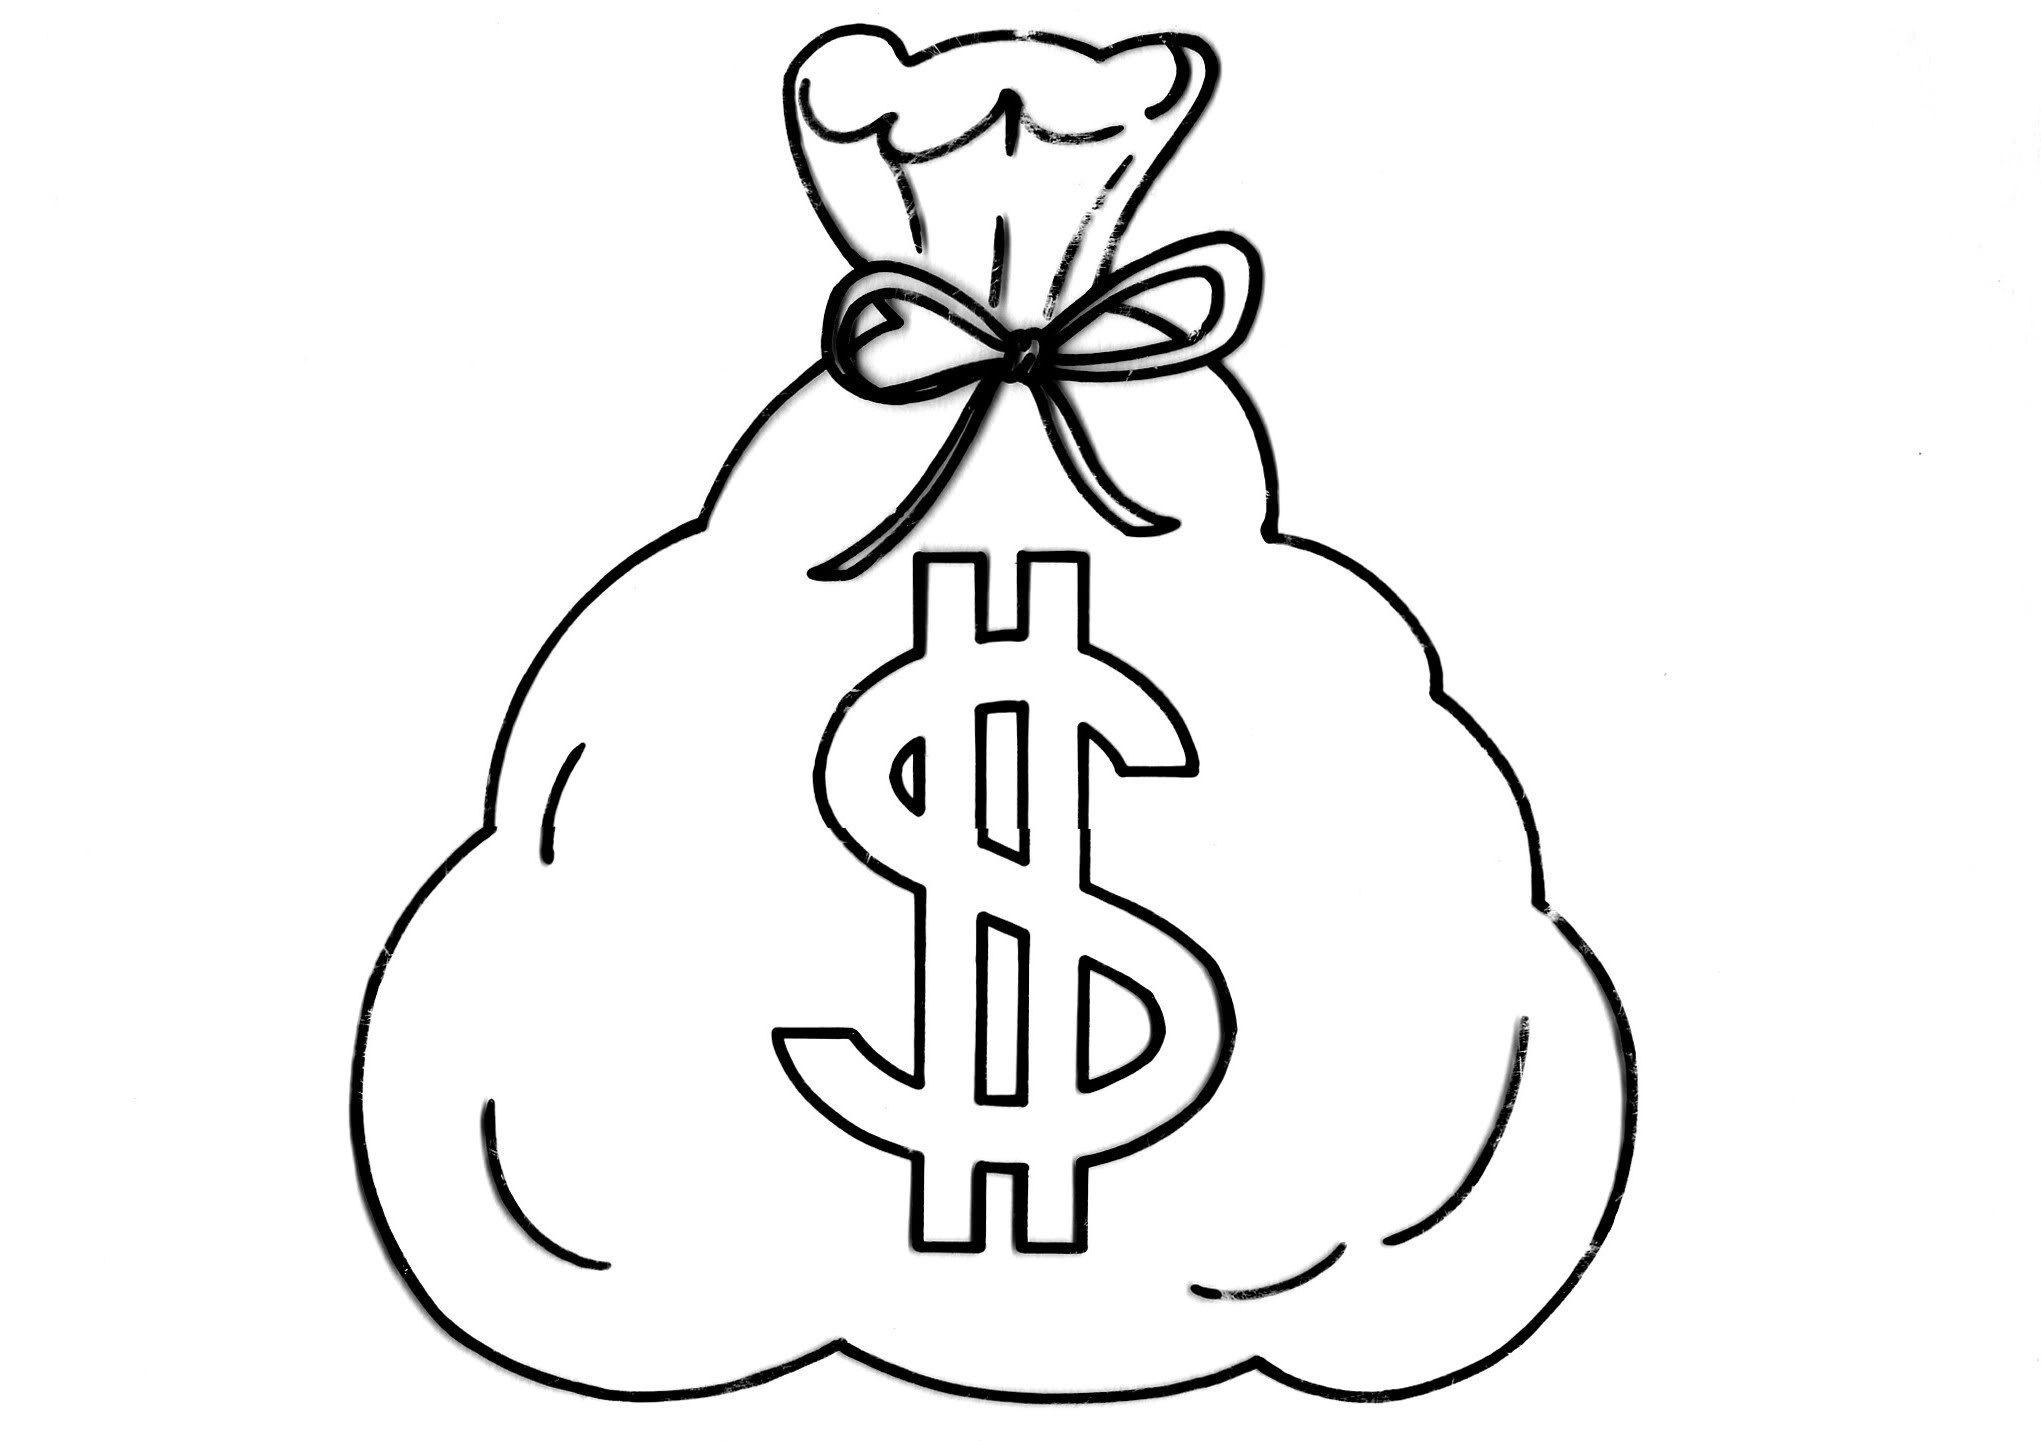 Money Bag Logo - Gene Simmons jeans line for men and women | kissnews